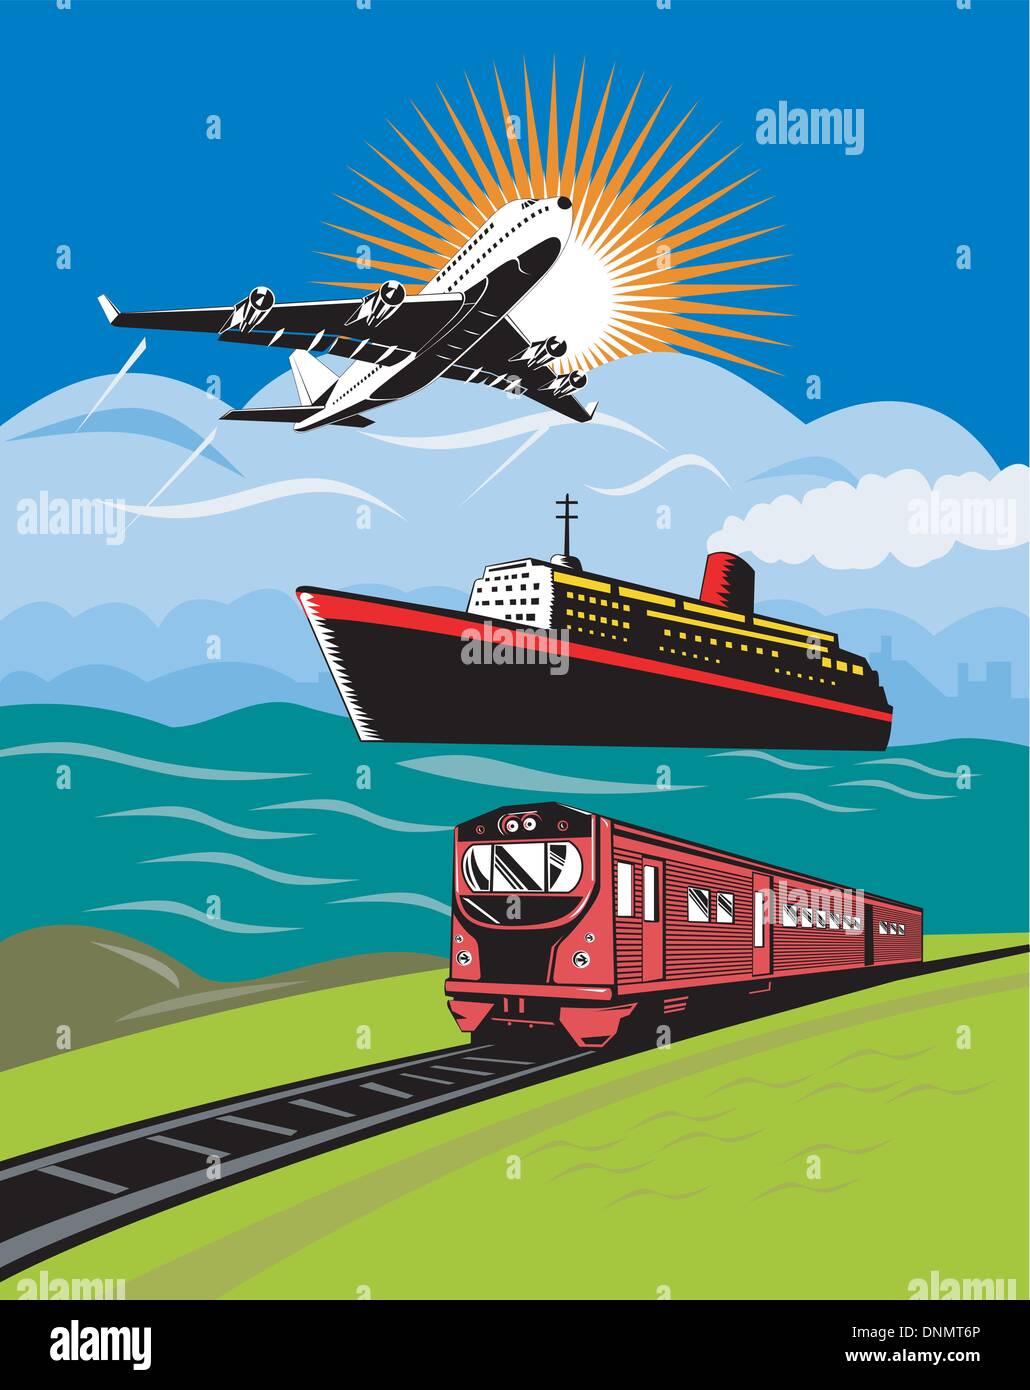 Illustration d'un avion à réaction commerciaux sur avion vol vol décollant avec bateau et train Illustration de Vecteur